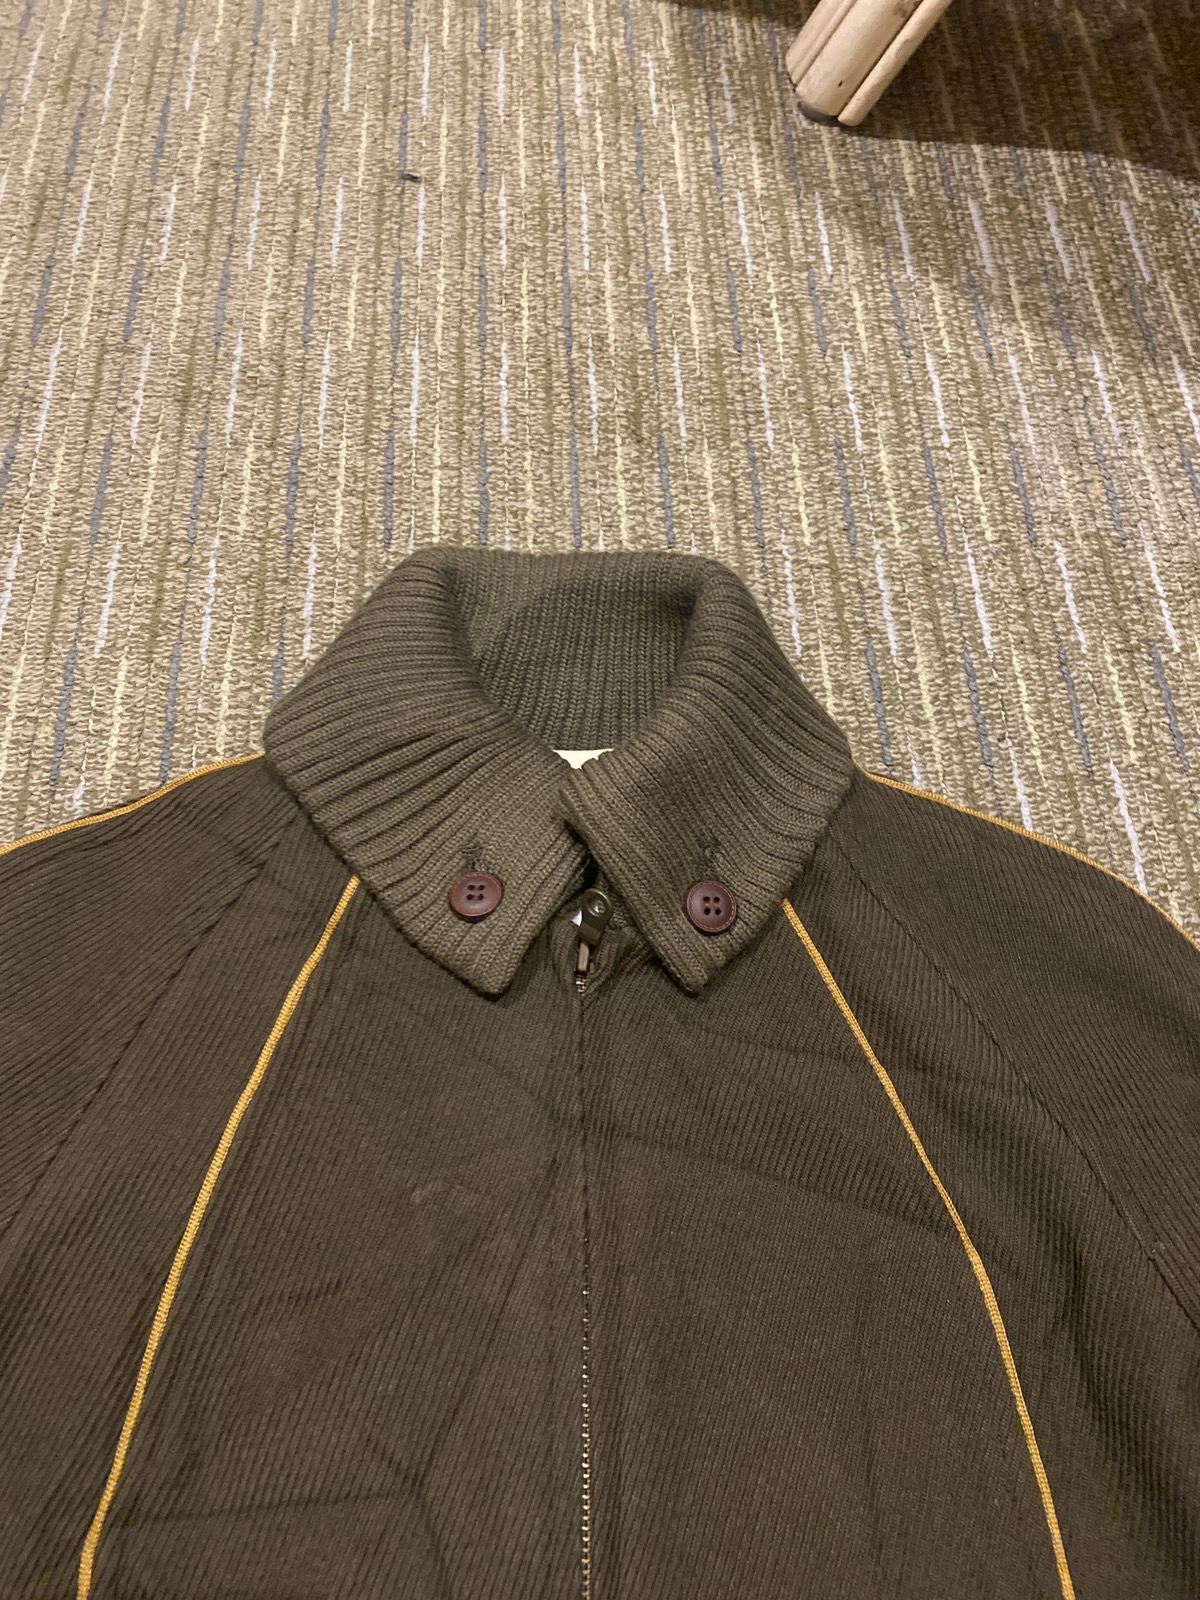 Japanese Brand - Vintage Relacher Coat Jacket JapaneseBrand Nice Design - 2